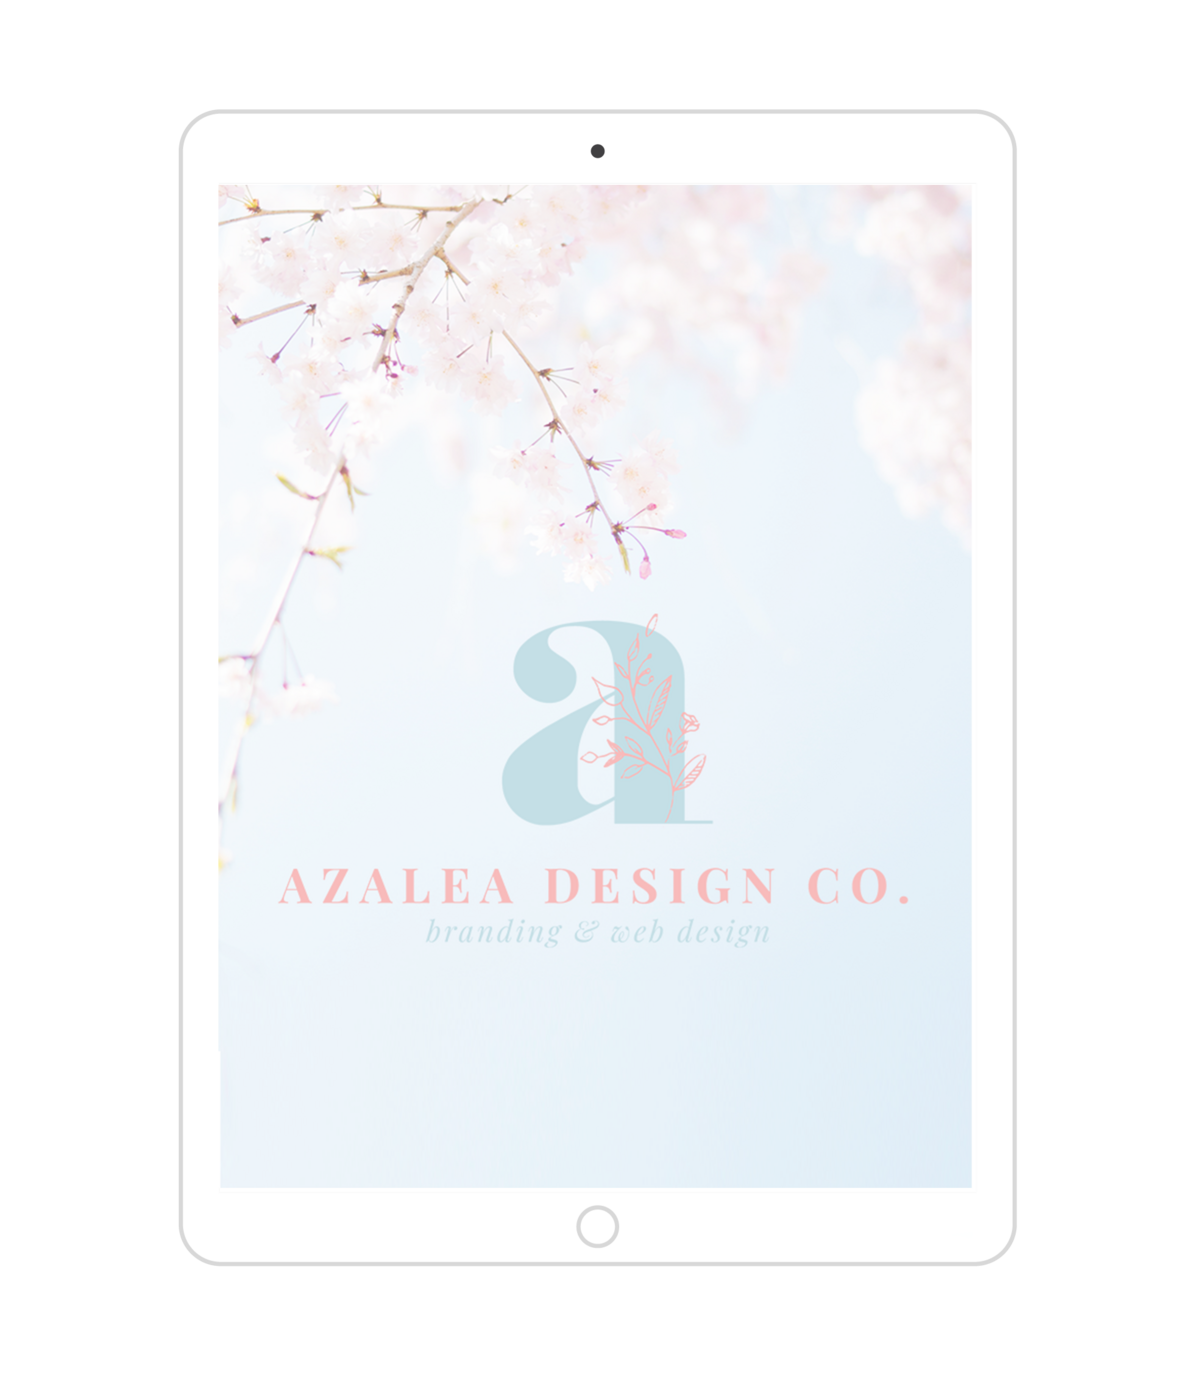 Azalea Design Co Branding